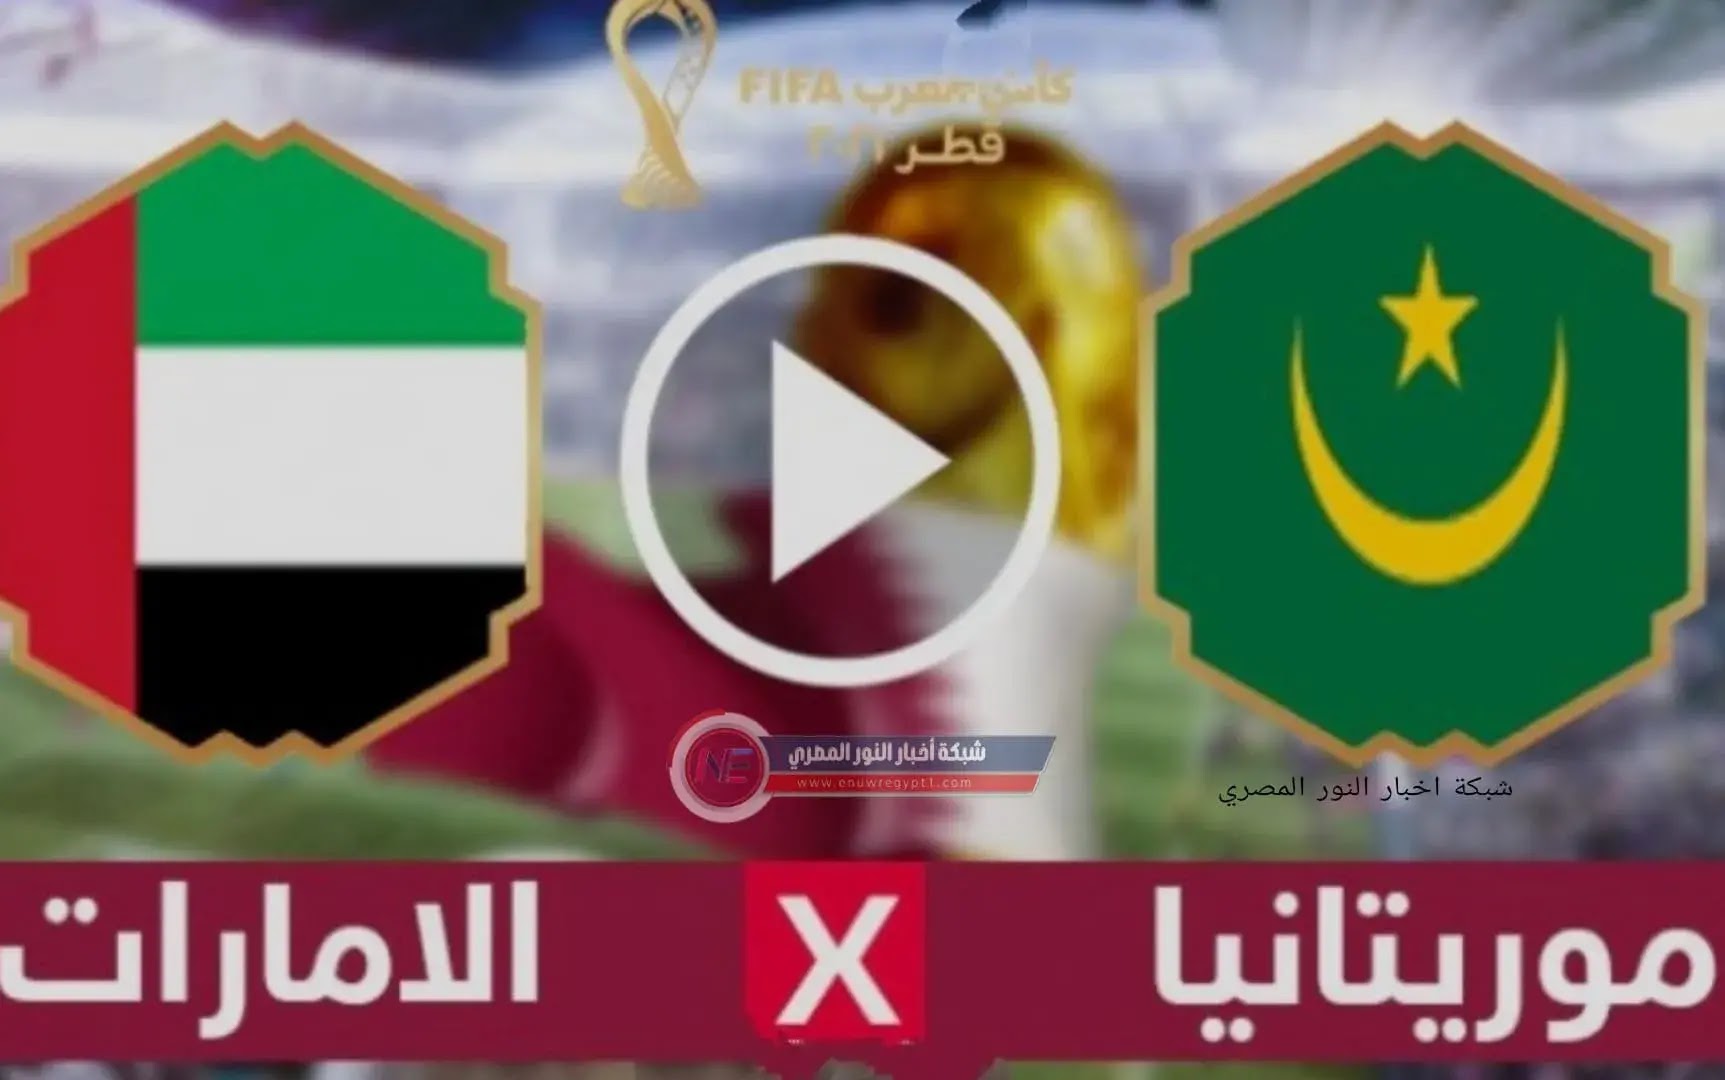 الان نتيجة واهداف مباراة الامارات و موريتانيا اليوم 03-12-2021 في كأس العرب يلا كورة